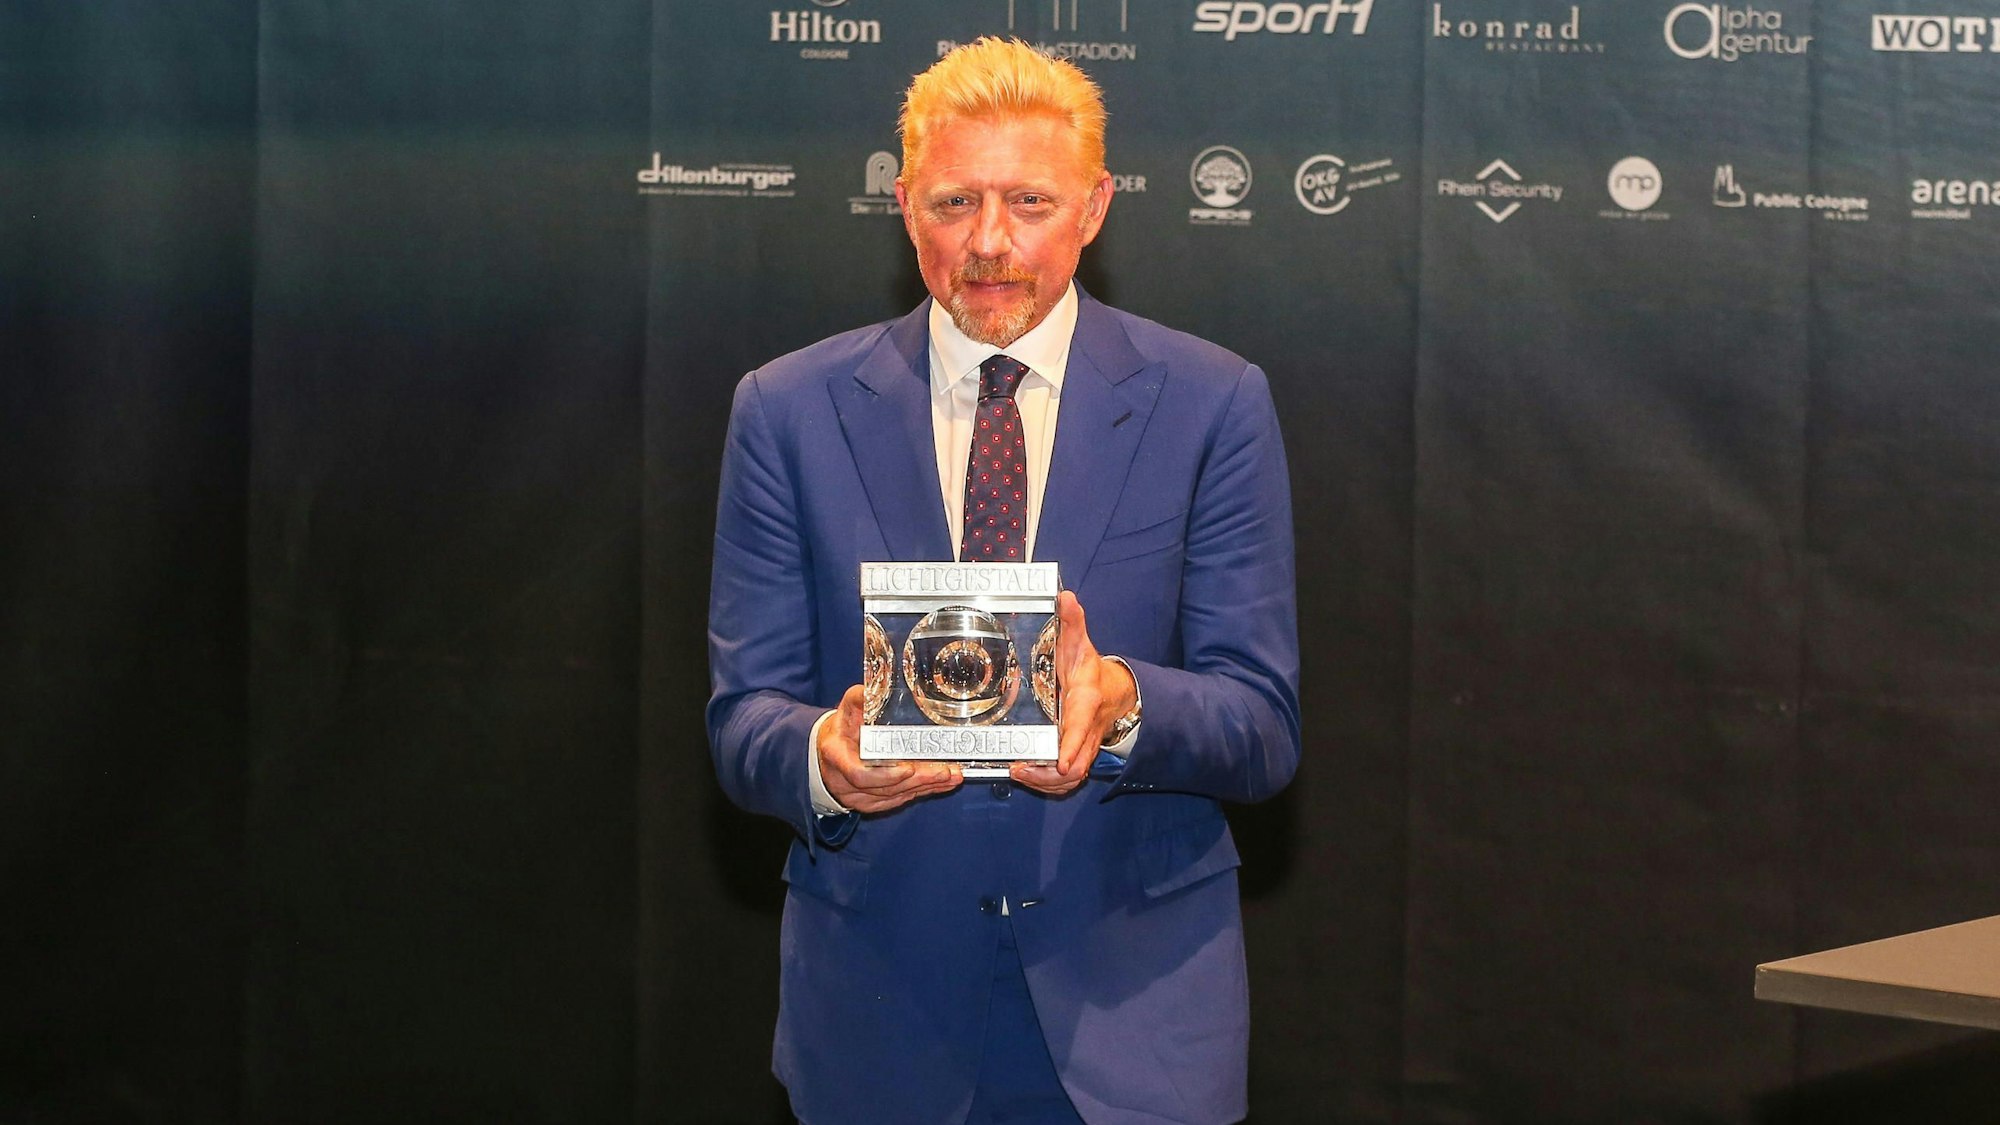 Boris Becker bei der ETL-EXPRESS-Sportnacht 2016.